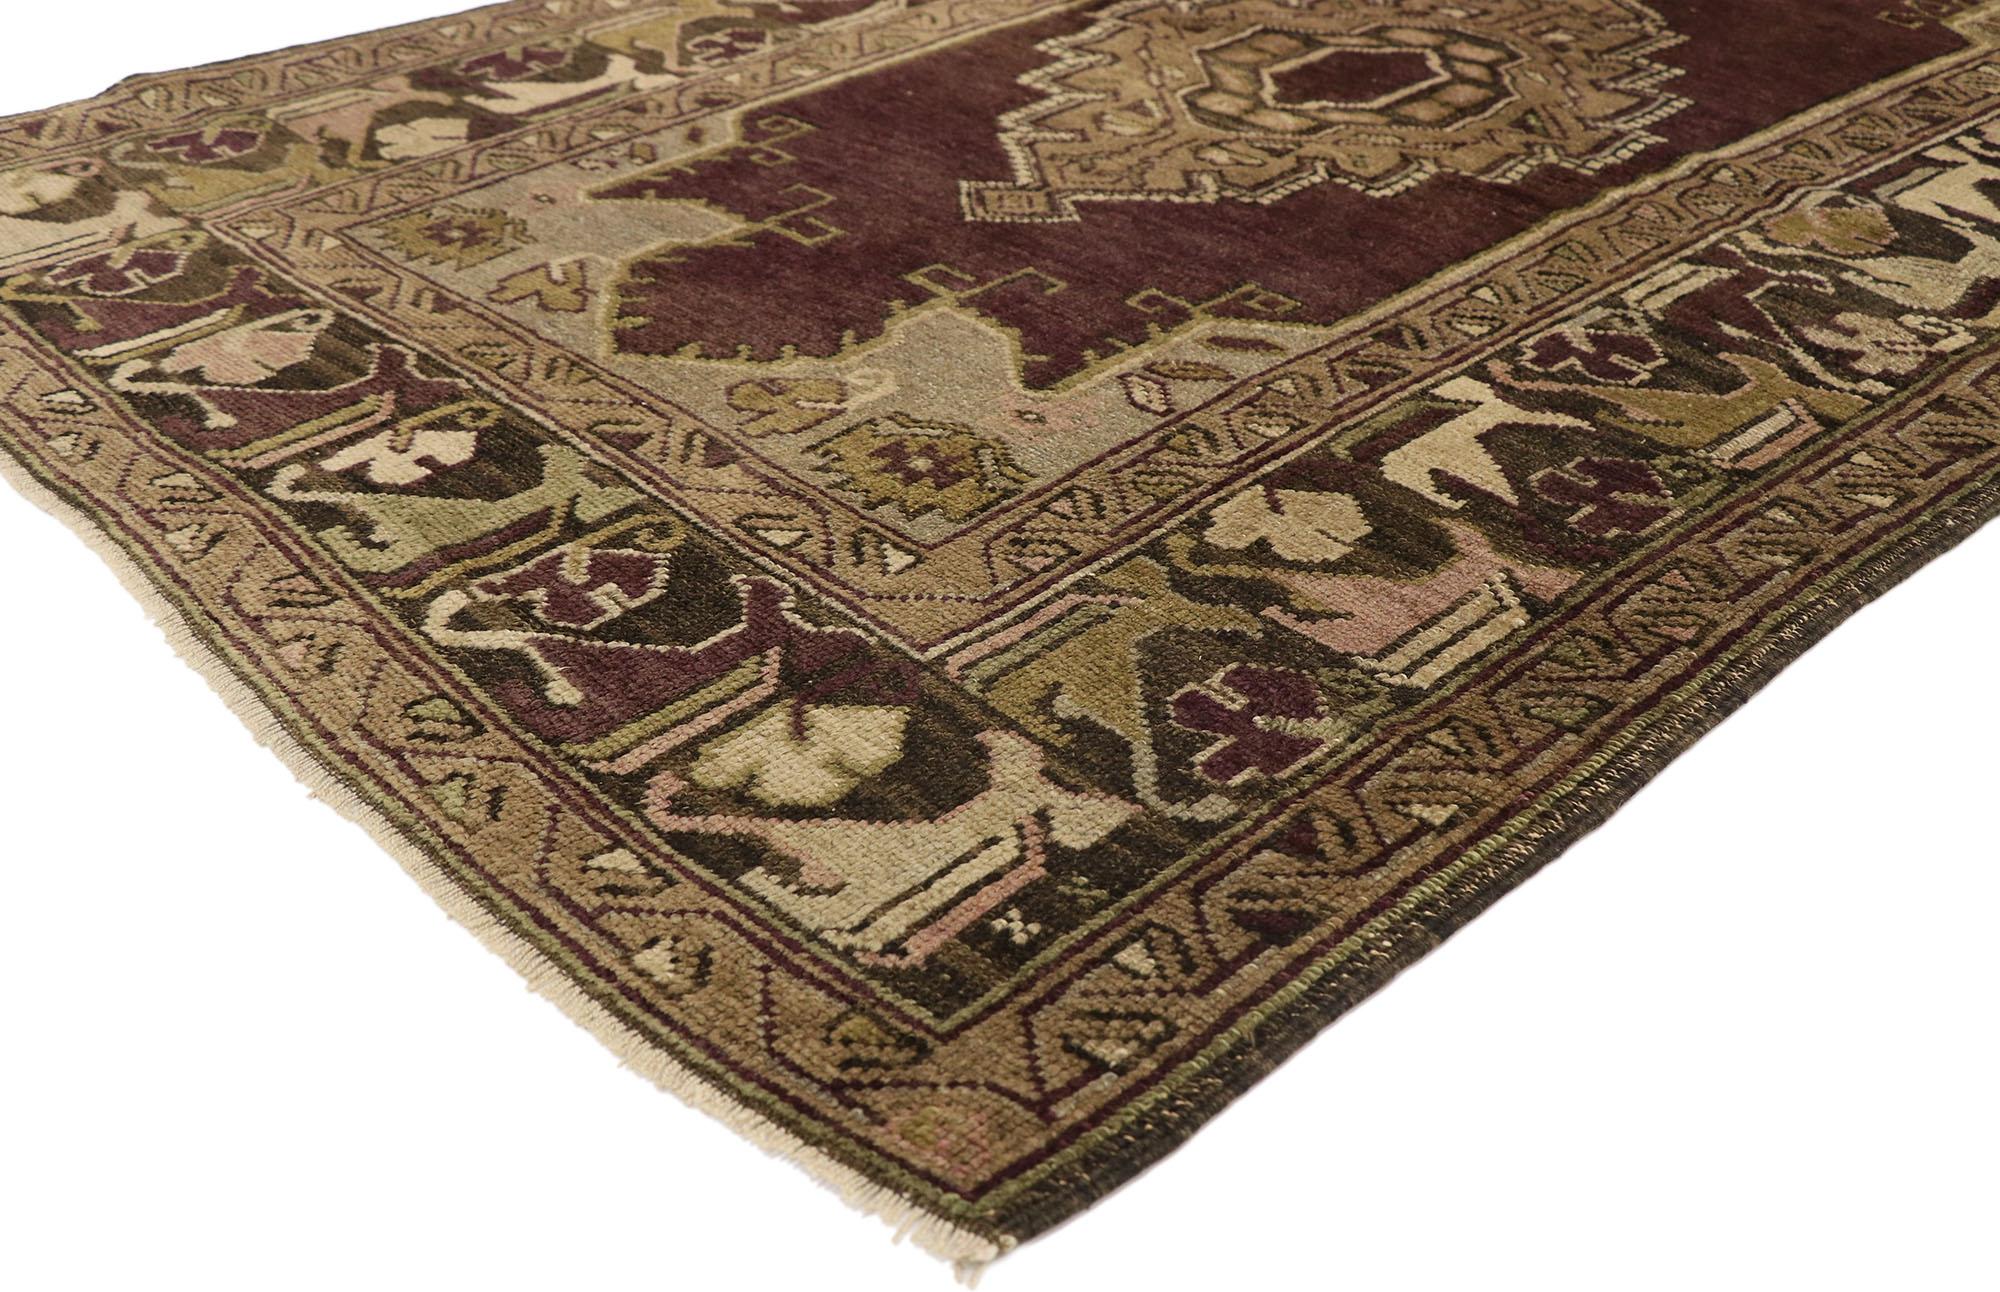 50112, tapis turc Oushak vintage de style Renaissance vénitienne. Chaleureux et accueillant, ce tapis Oushak turc vintage noué à la main présente un médaillon central en escalier dans un champ ouvert de couleur aubergine abrasée. Des fleurs et des